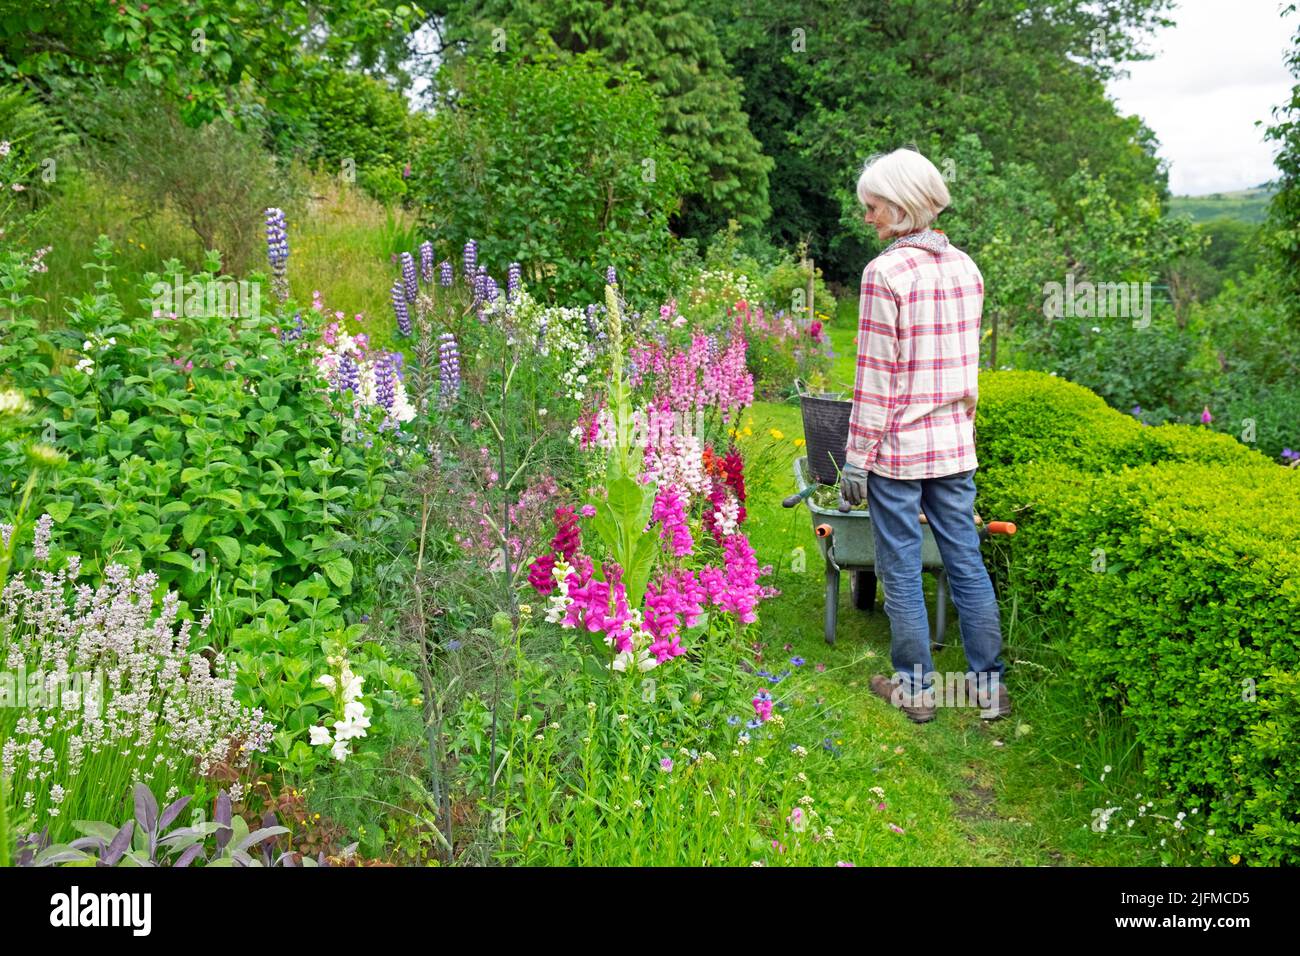 Femme de brouette antirrhinums ou vivandragons dans un jardin herbacé de fleurs et d'herbes de campagne en juillet Carmarthenshire pays de Galles Royaume-Uni KATHY DEWITT Banque D'Images